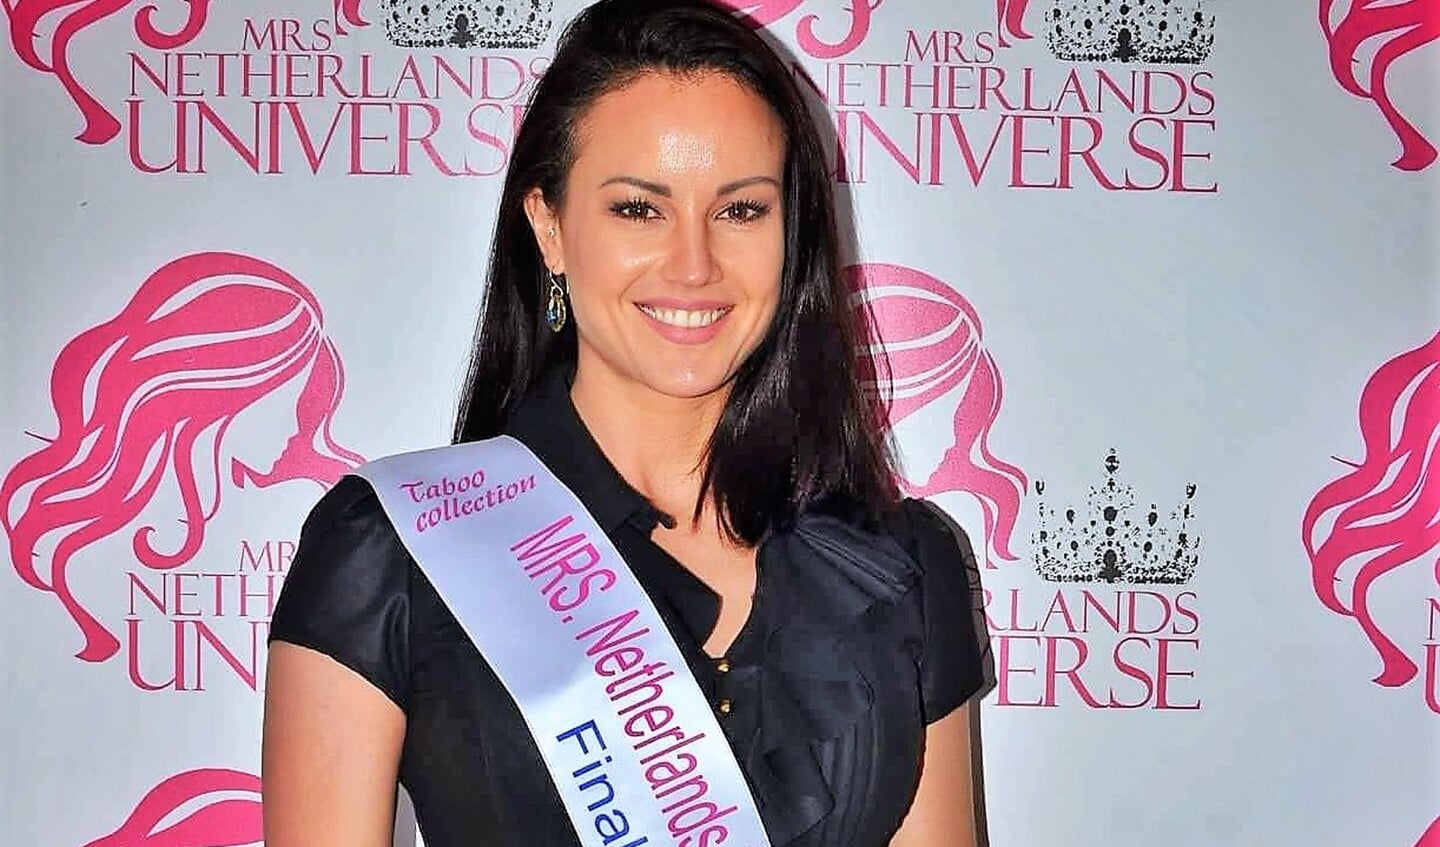 Nikita Ramona Robles de Medina is finalist voor de verkiezing van de Mrs. Nederland Universe (foto: pr).